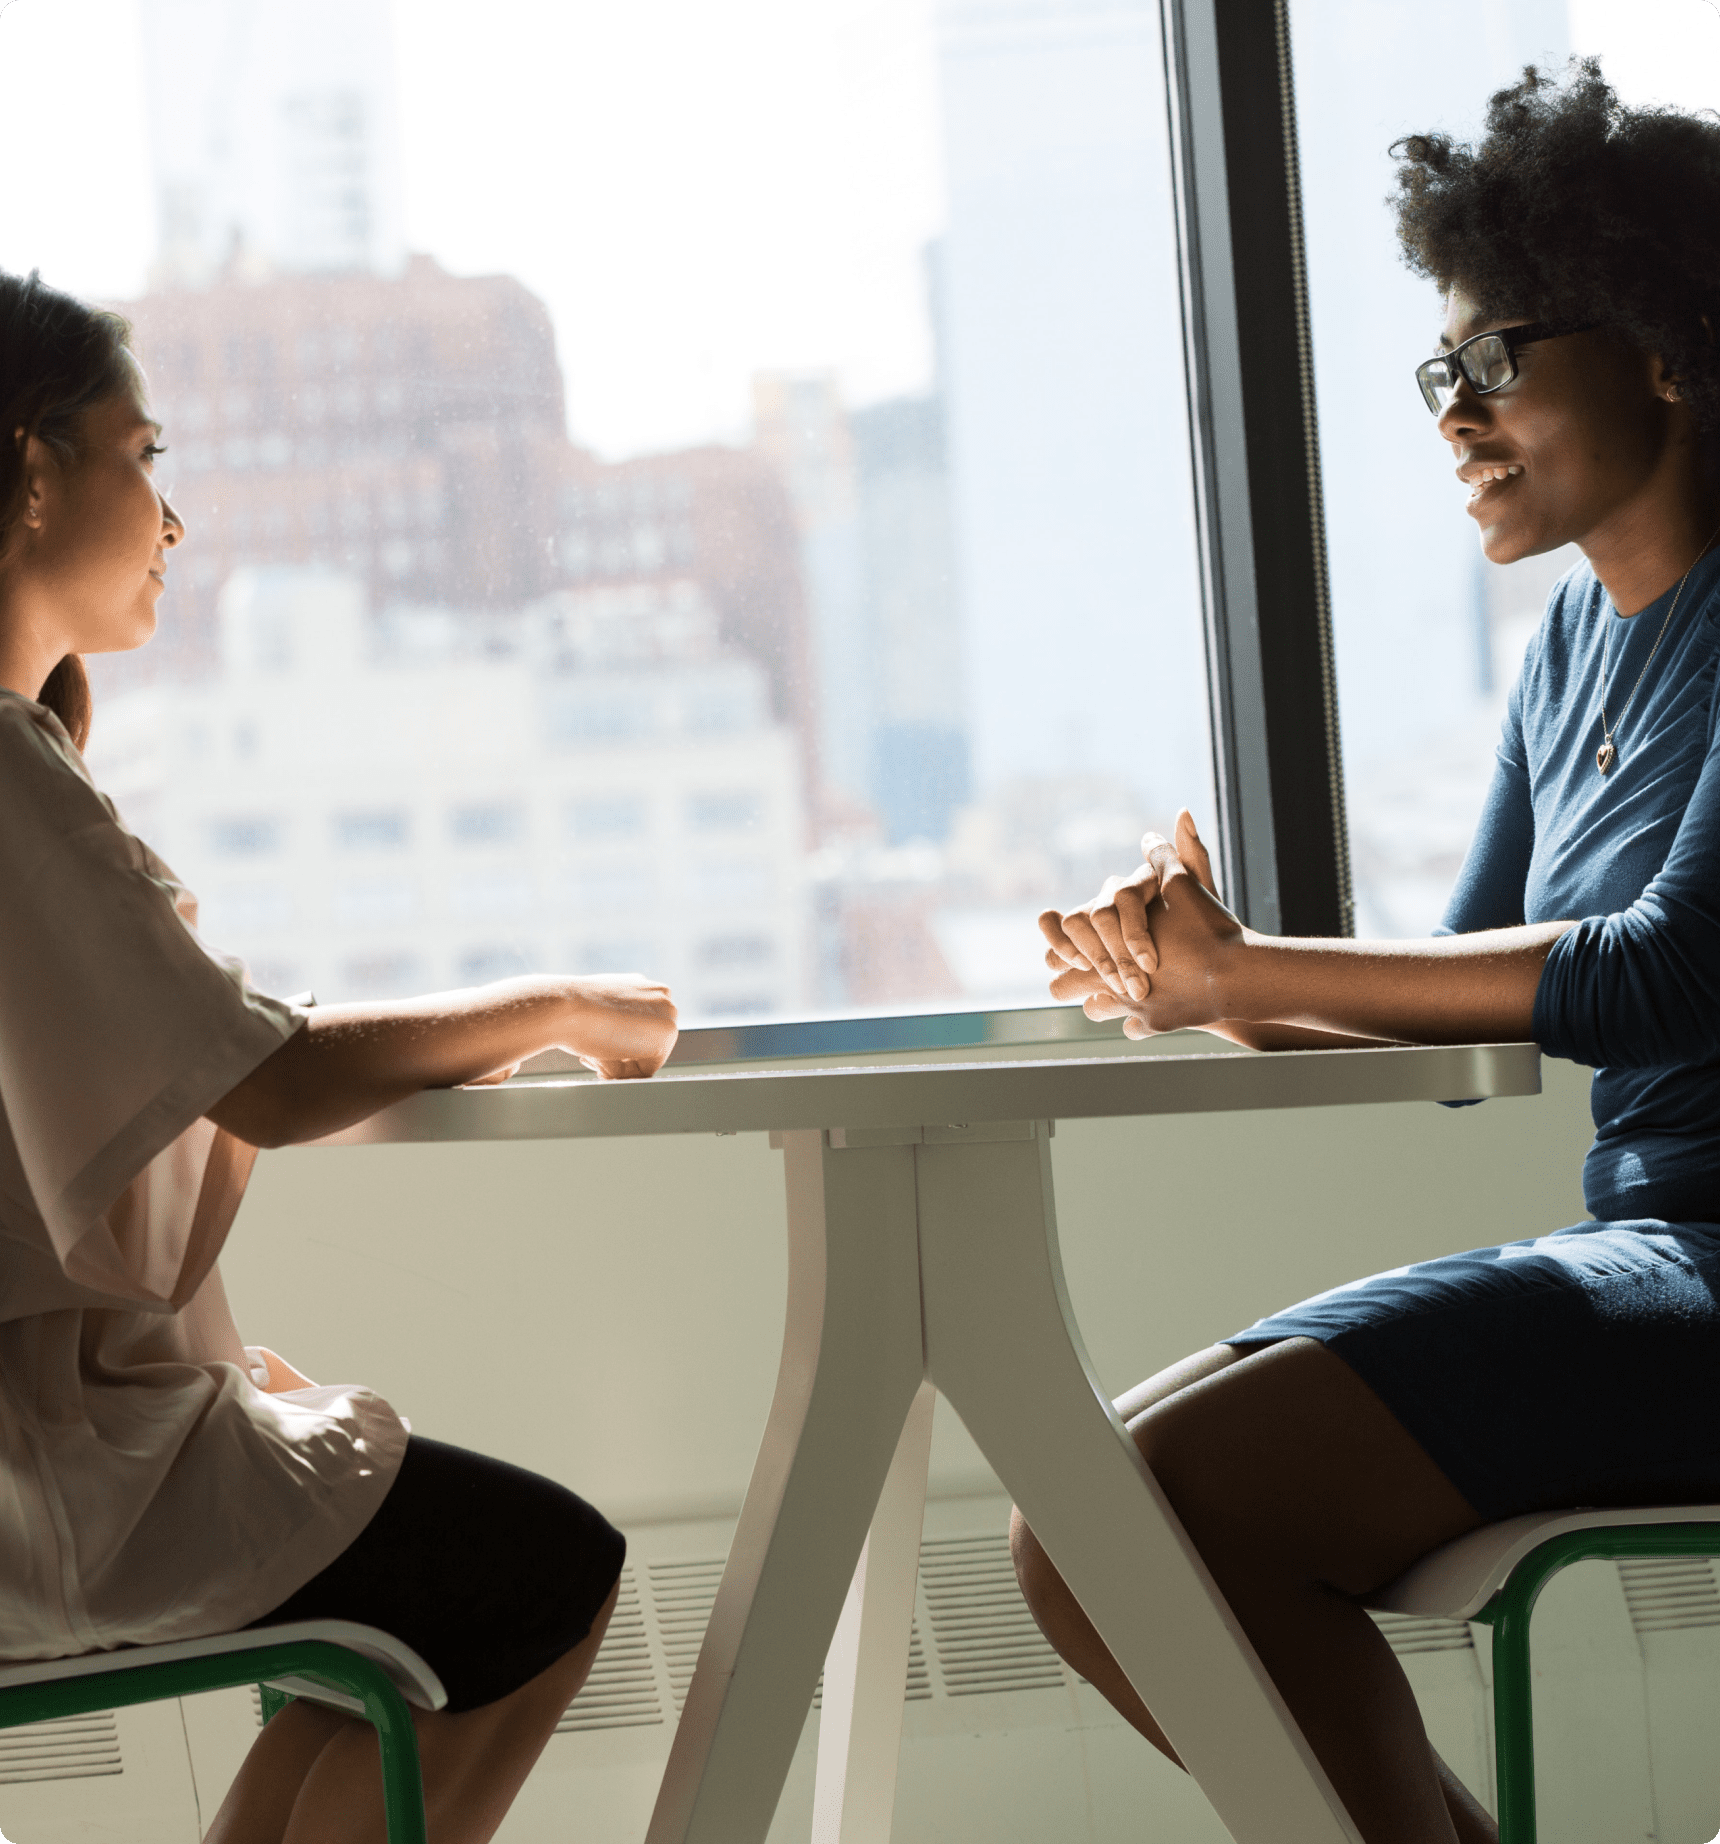 Dos mujeres discuten cuestiones laborales en una oficina.